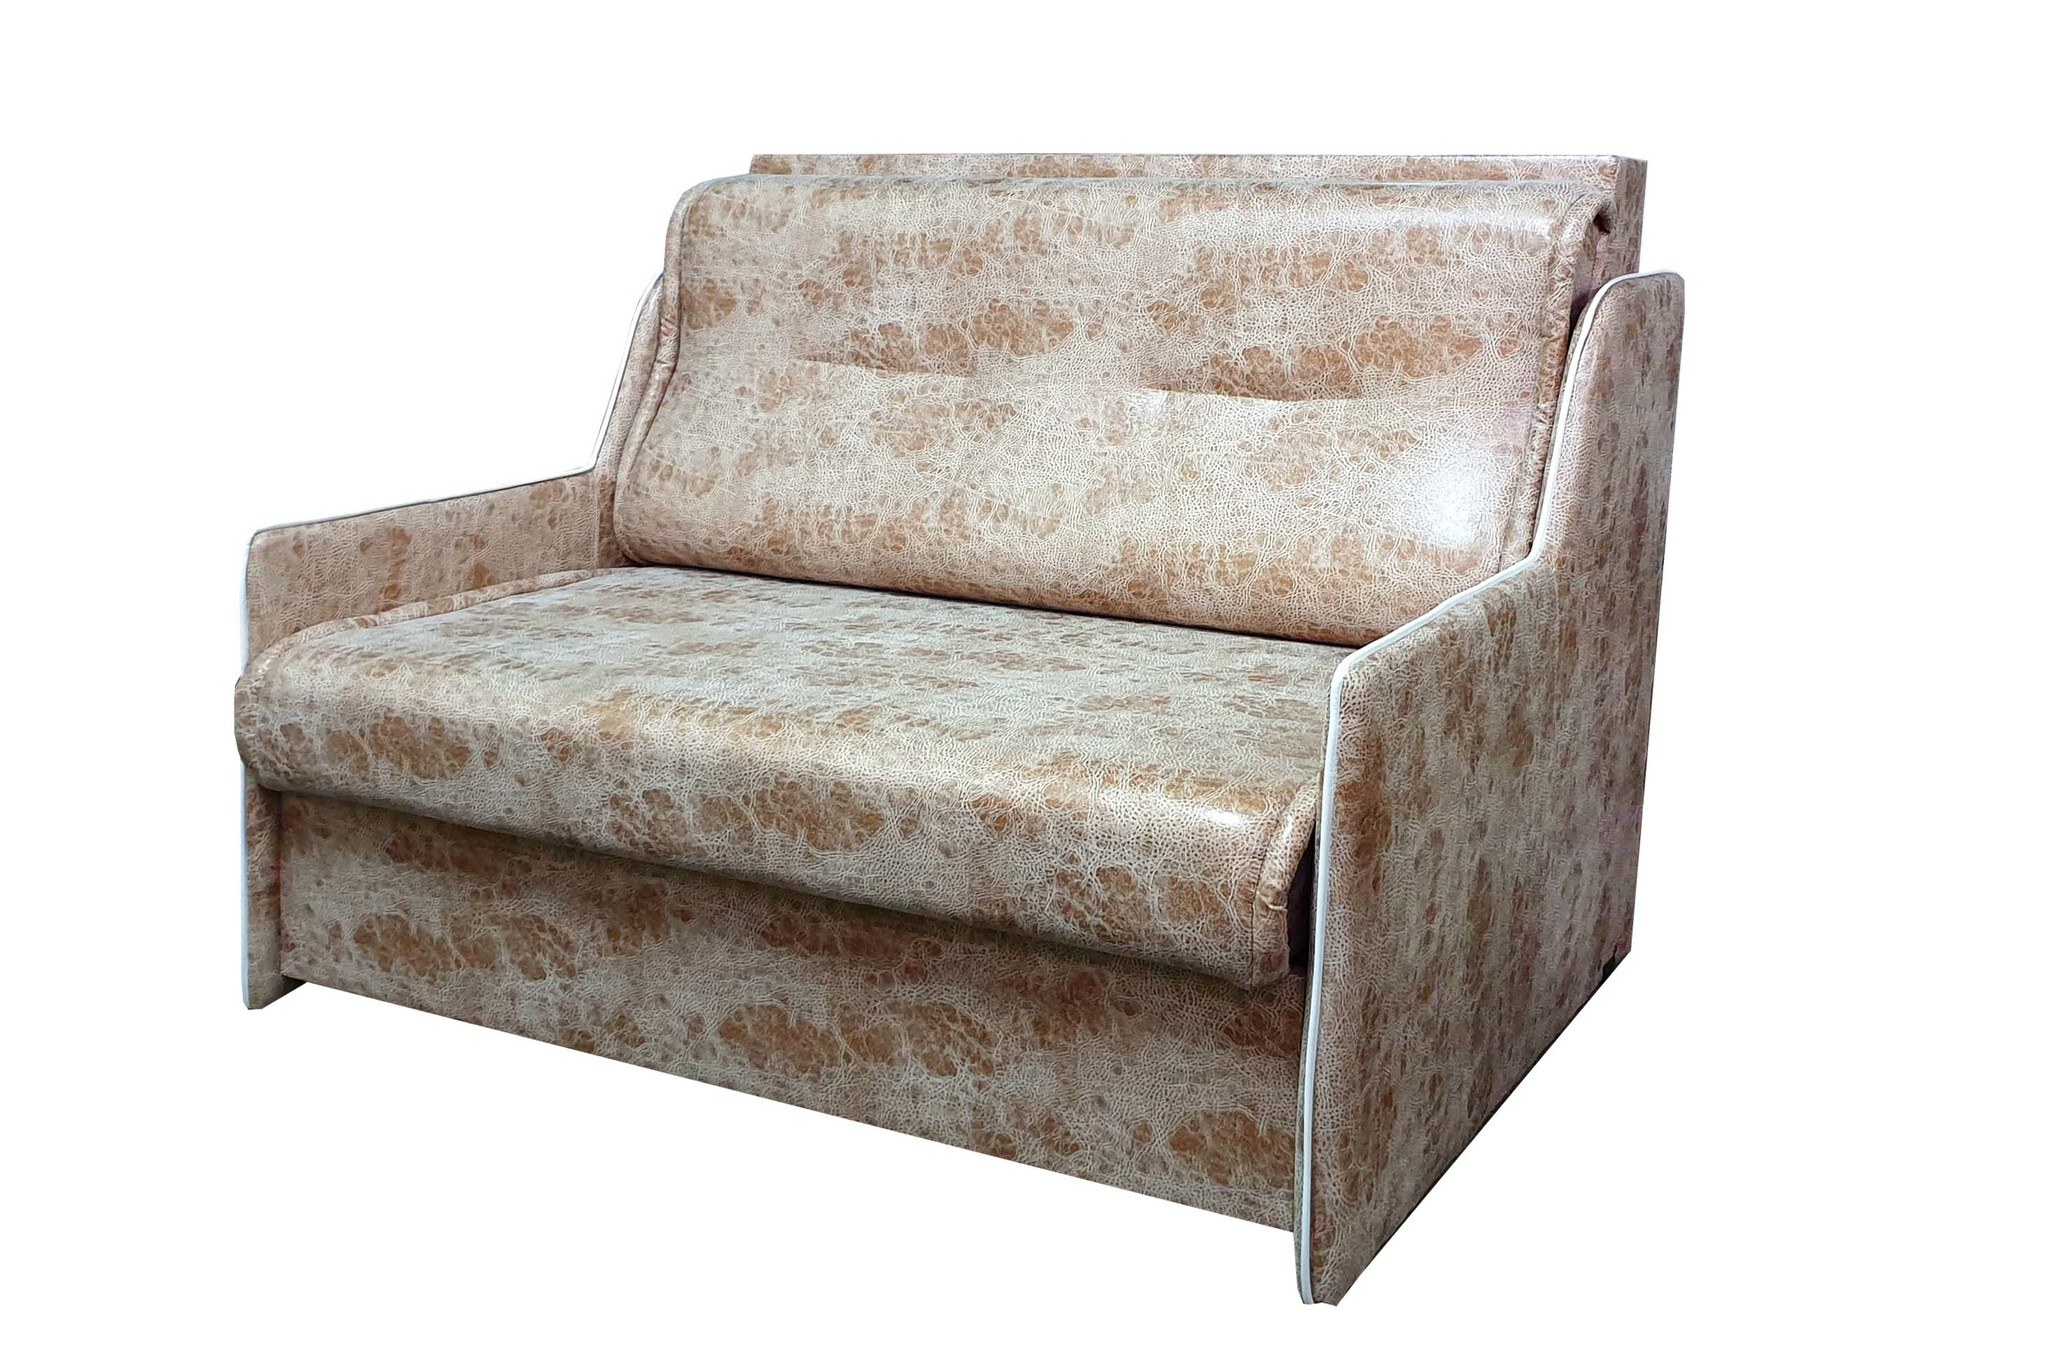 Купить выкатной диван в спб от производителя. Выкатной диван "Аккорд-2" 130 см. Выкатной диван. Диван классический выкатной. Диван выкатной без подлокотников.